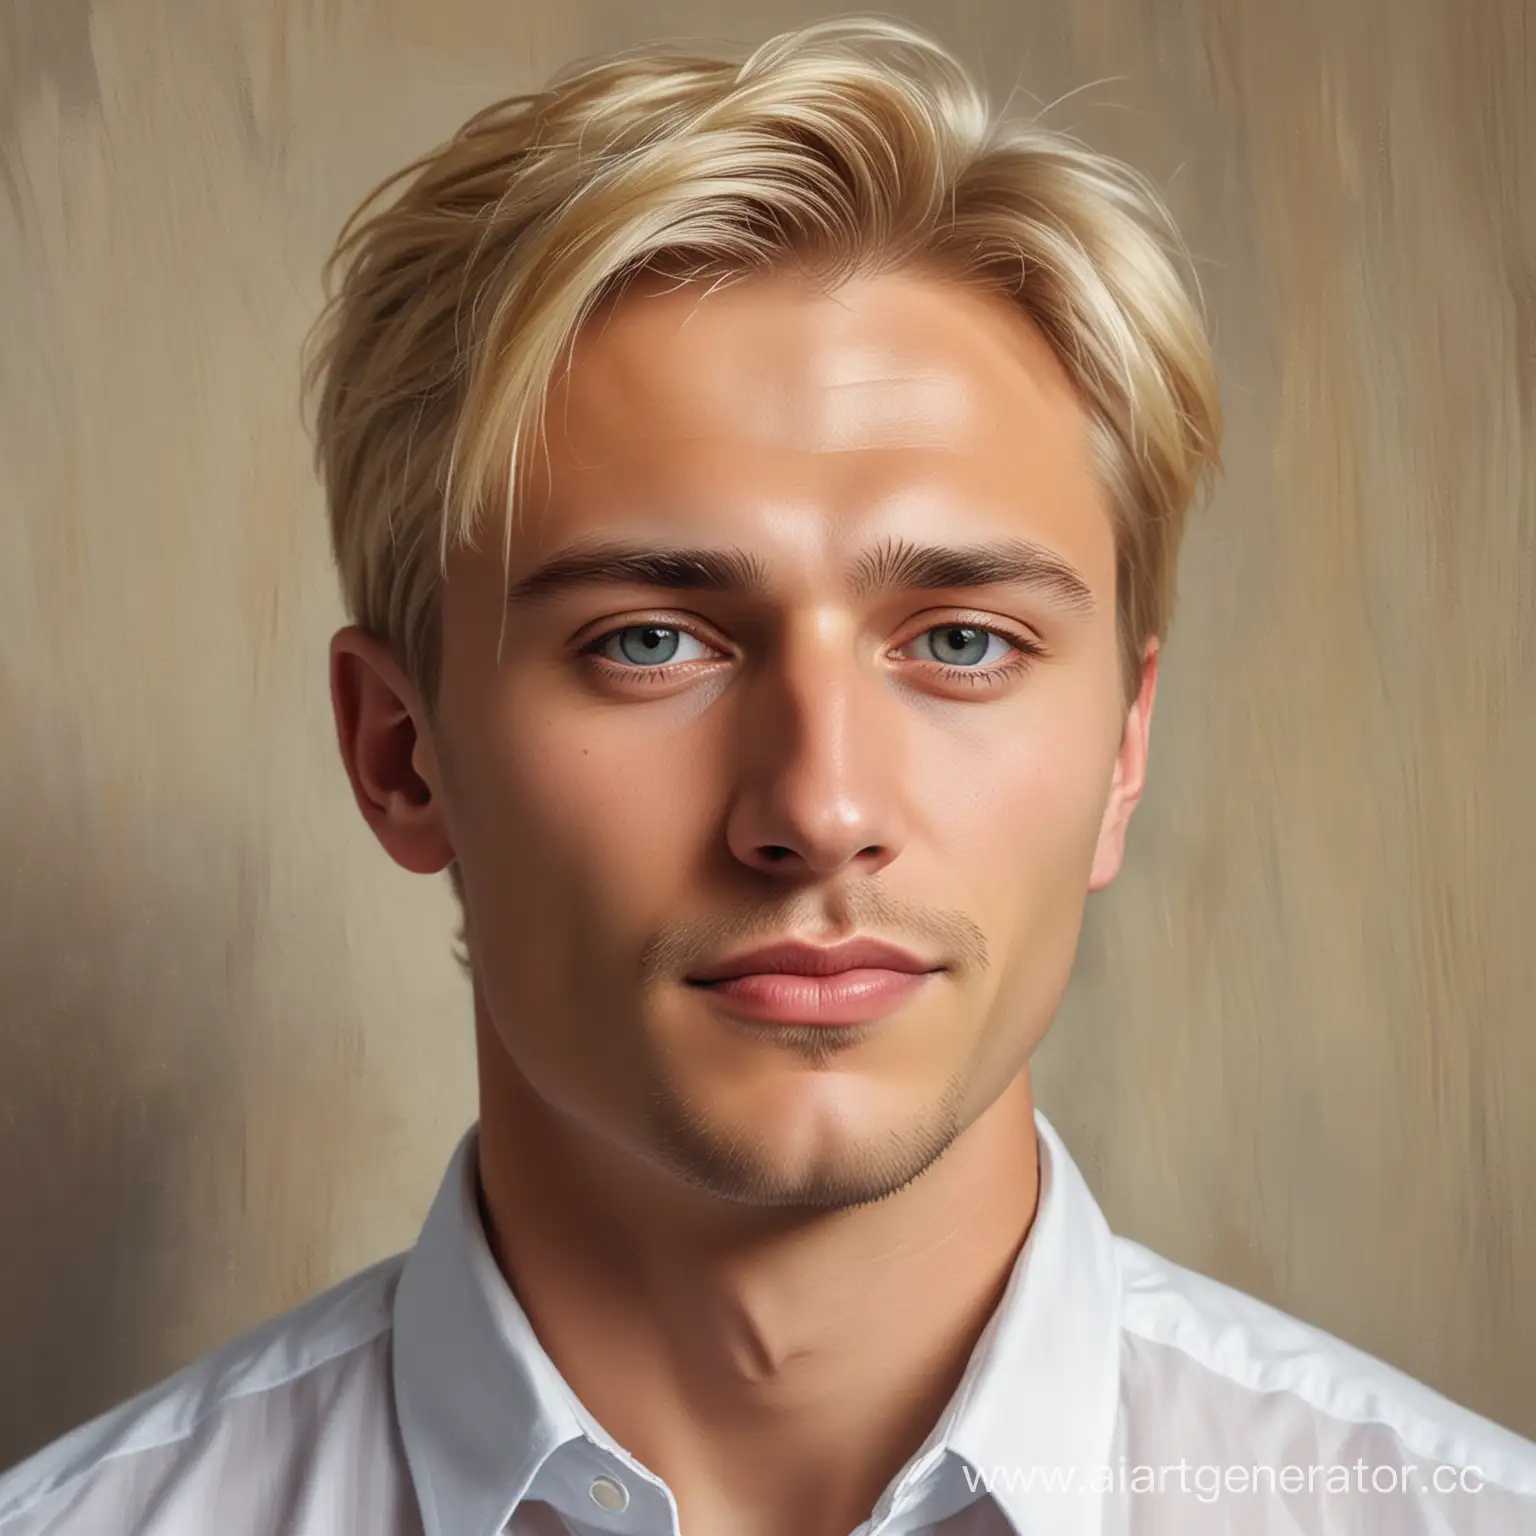 Сгенериру портрет дмитрия, он взрослый, он красивый блондин, богатый и интересуется современным искусством 

